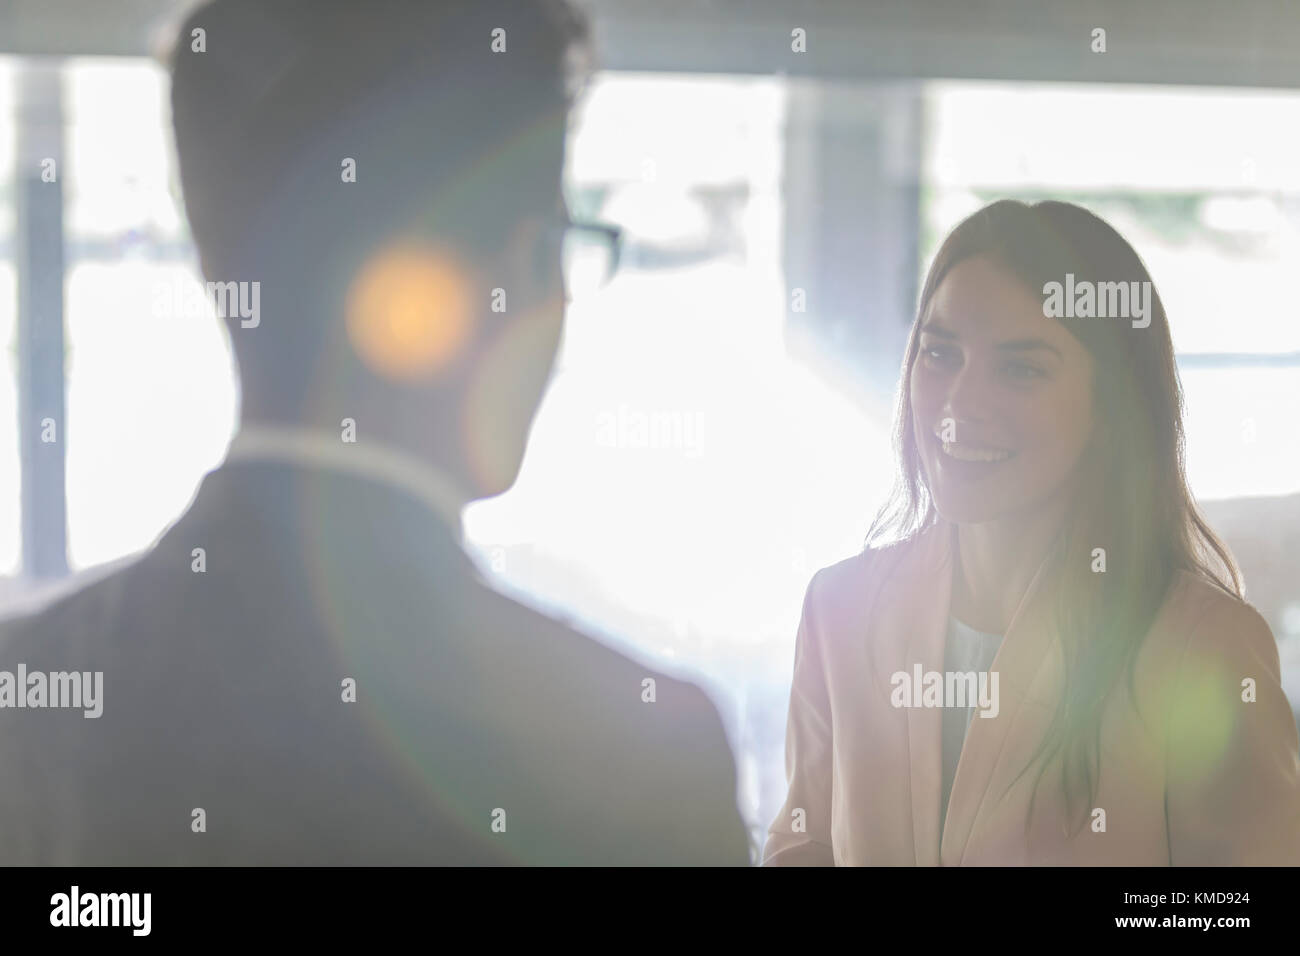 Geschäftsfrau im Gespräch mit Geschäftsmann lächelnd Stockfoto